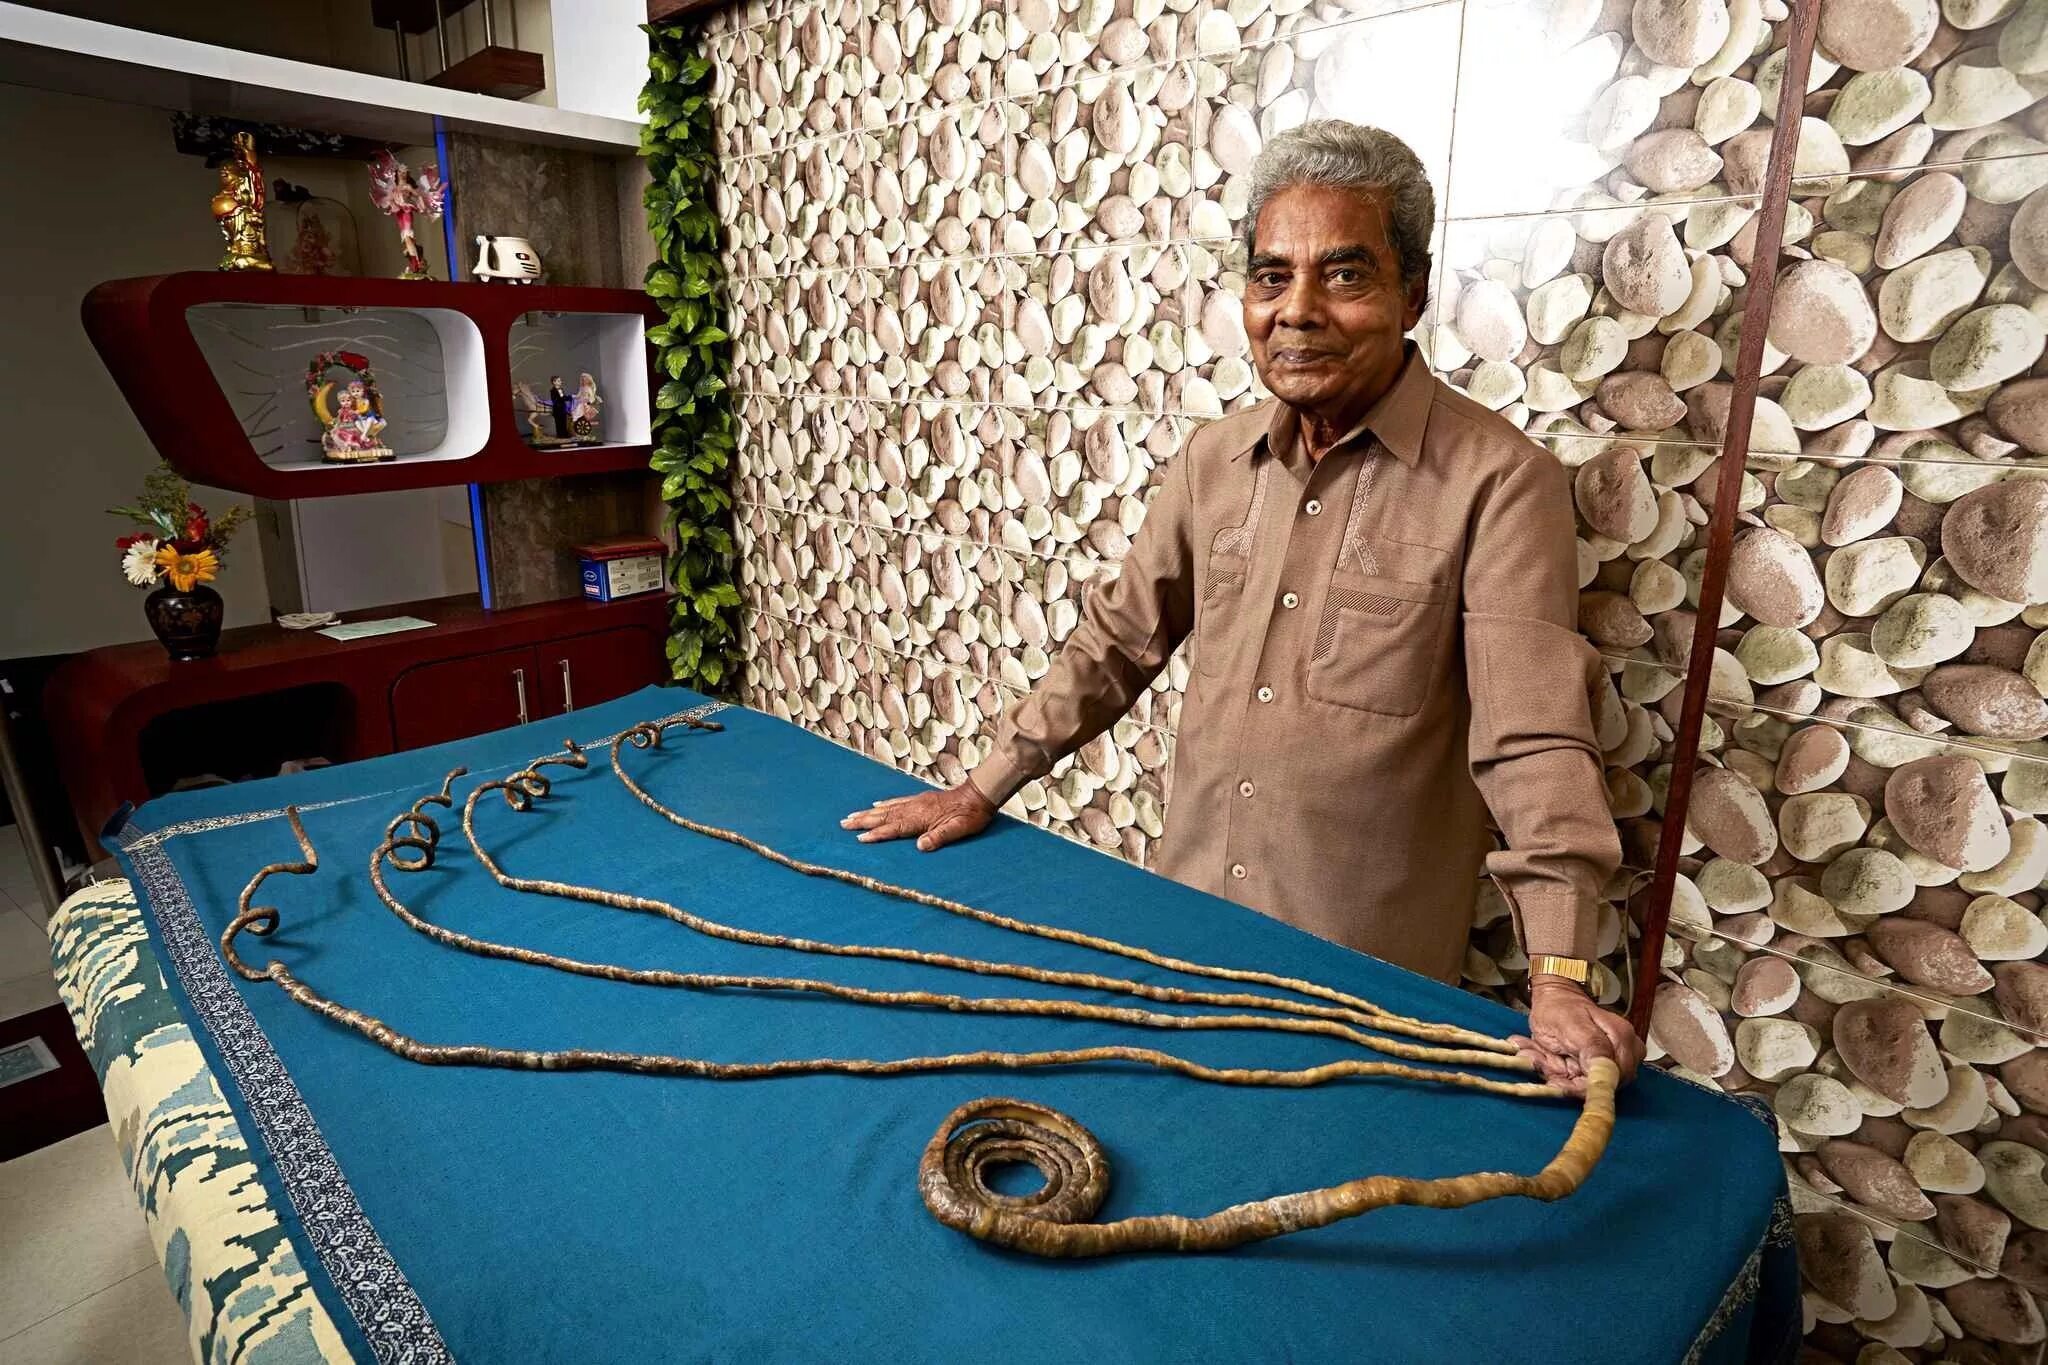 Т 34 в книге рекордов гиннесса. Шридхар Чиллал. Самые длинные ногти в мире Шридхар Чиллал. Шридхар Чиллал ногти. Рекорд Гиннеса самые длинные ногти.